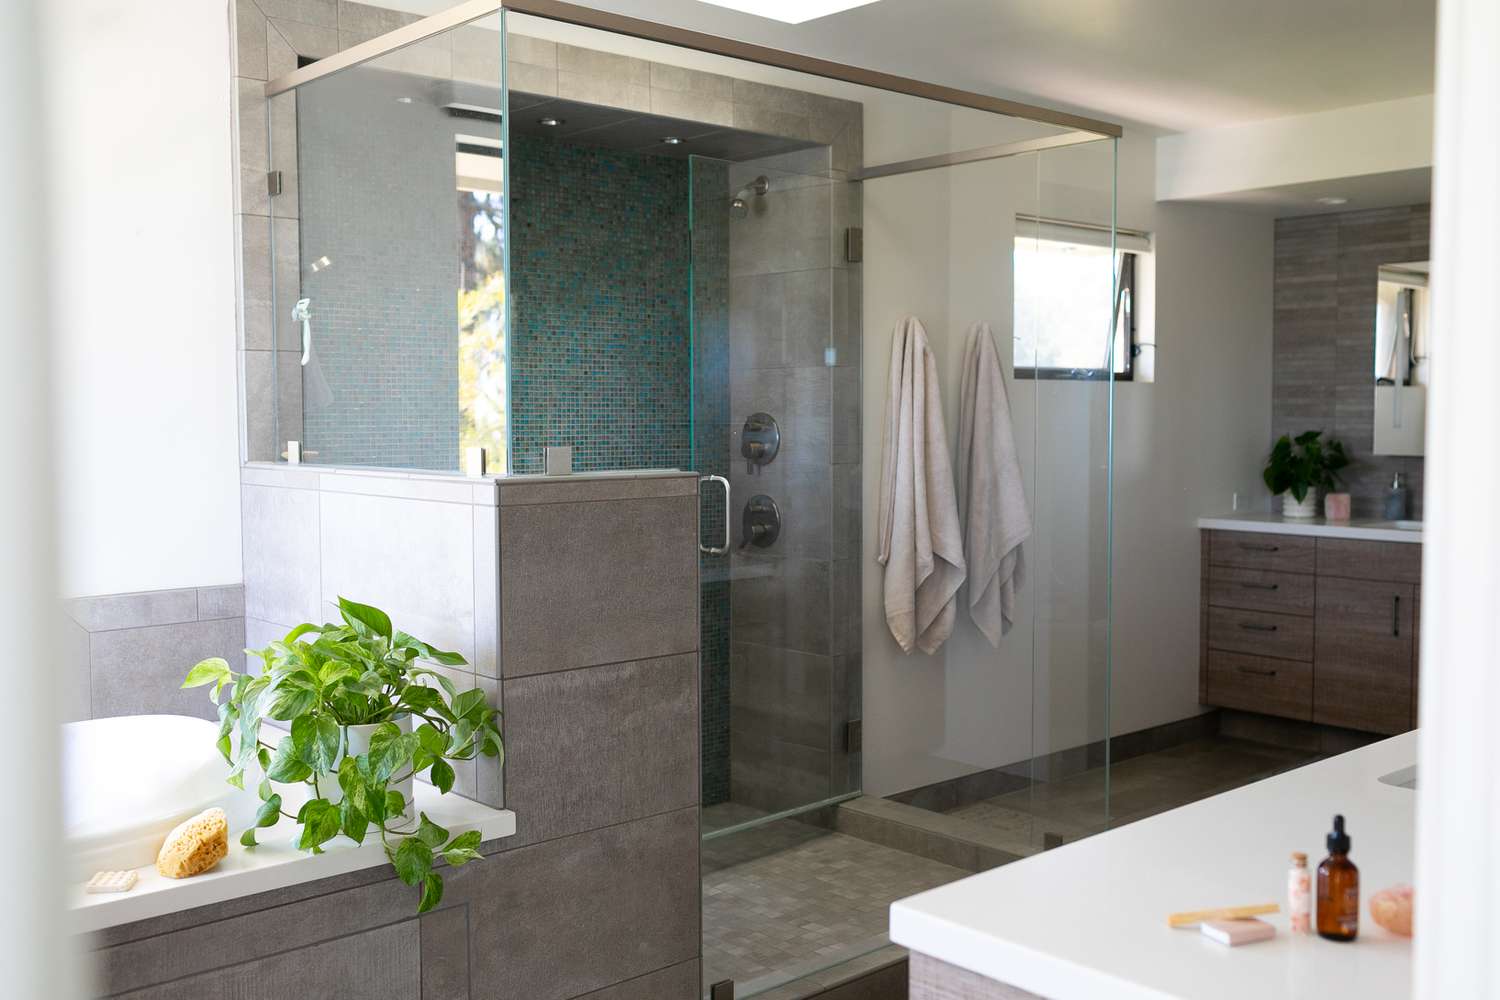 Salle de bain des invités avec portes en verre, plante d'intérieur près de la baignoire et objets de décoration sur les comptoirs